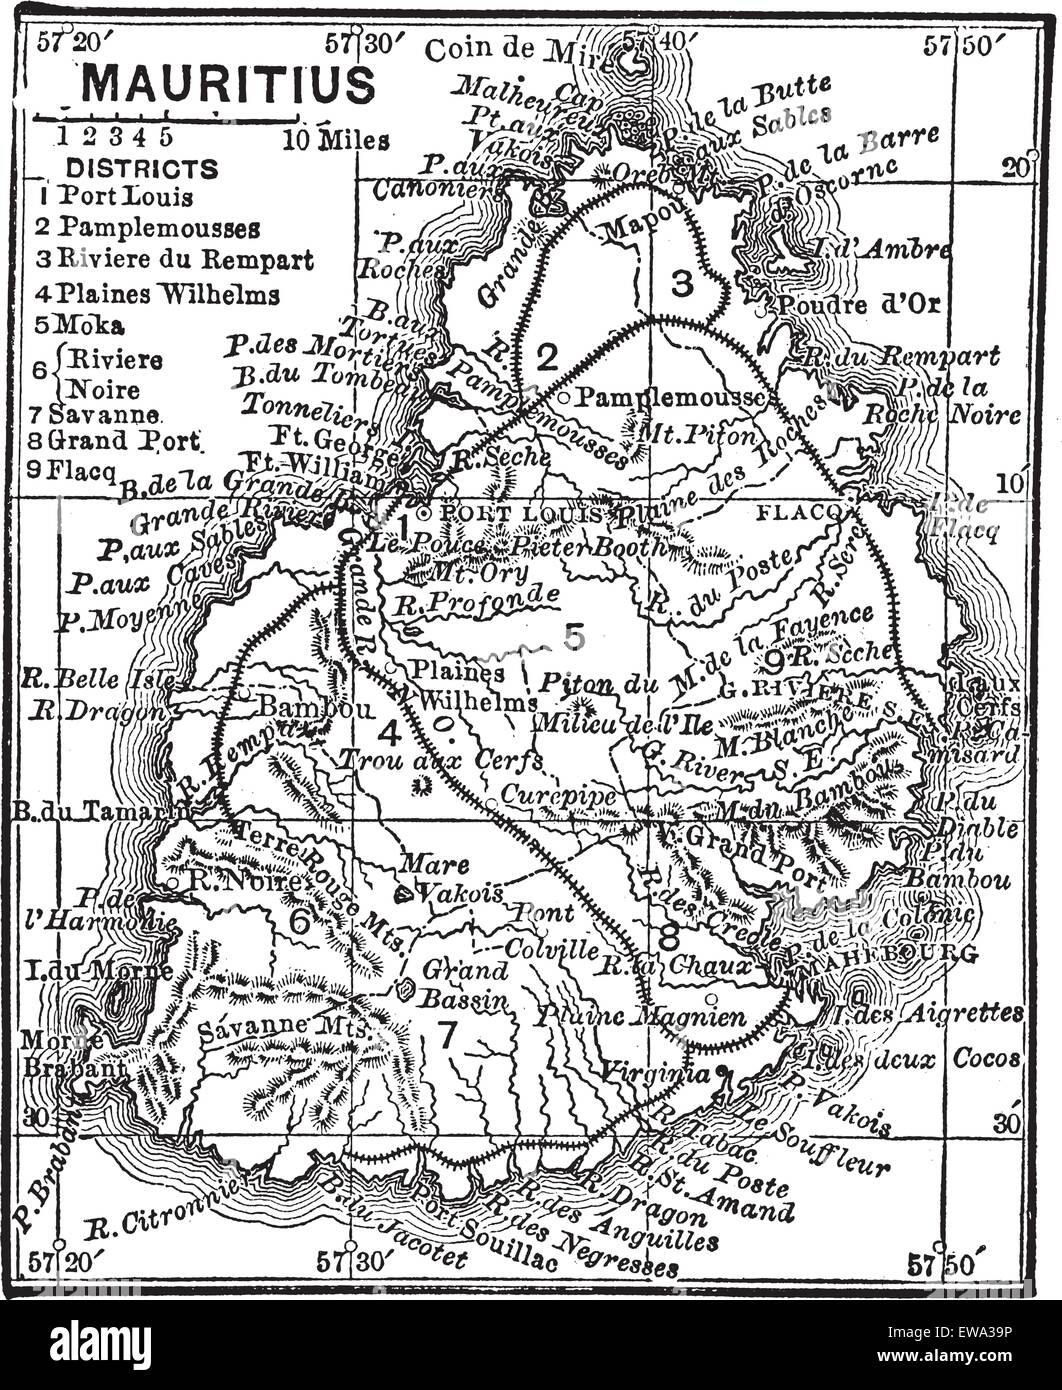 Carte de l'Île Maurice, au cours des années 1890, vintage la gravure. Vieille illustration gravée de la carte de l'île Maurice. Illustration de Vecteur